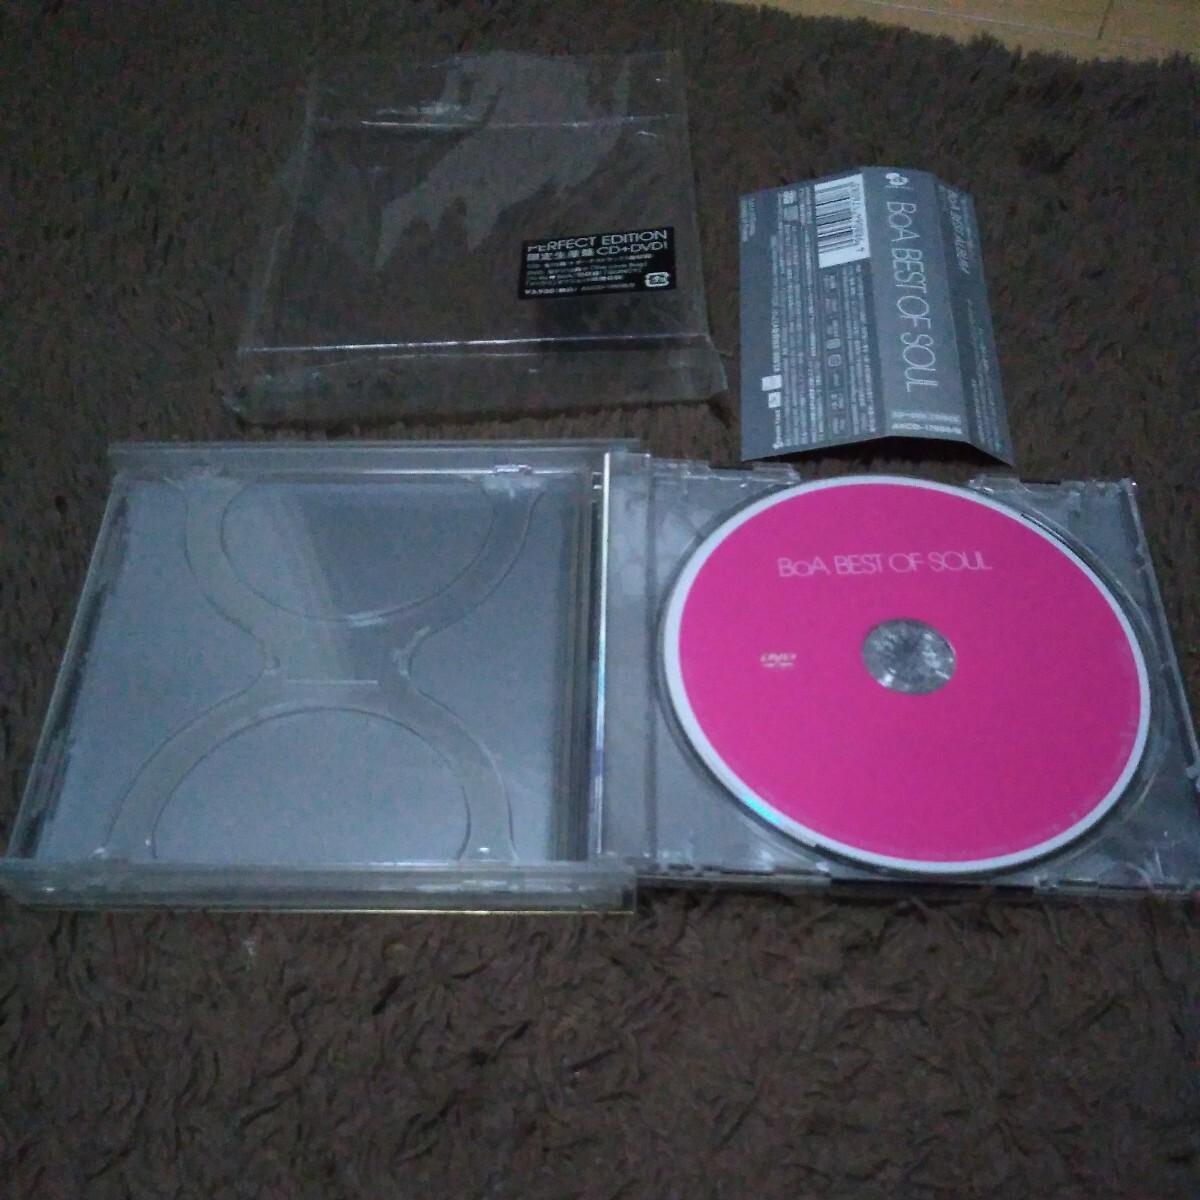 初回生産限定盤 CD & DVD 帯付 美品 ◆BoA BEST OF SOUL ~PERFECT EDITION~◆【ボーナストラック & 全PV14曲DVD】ベスト アルバム 16曲_画像4